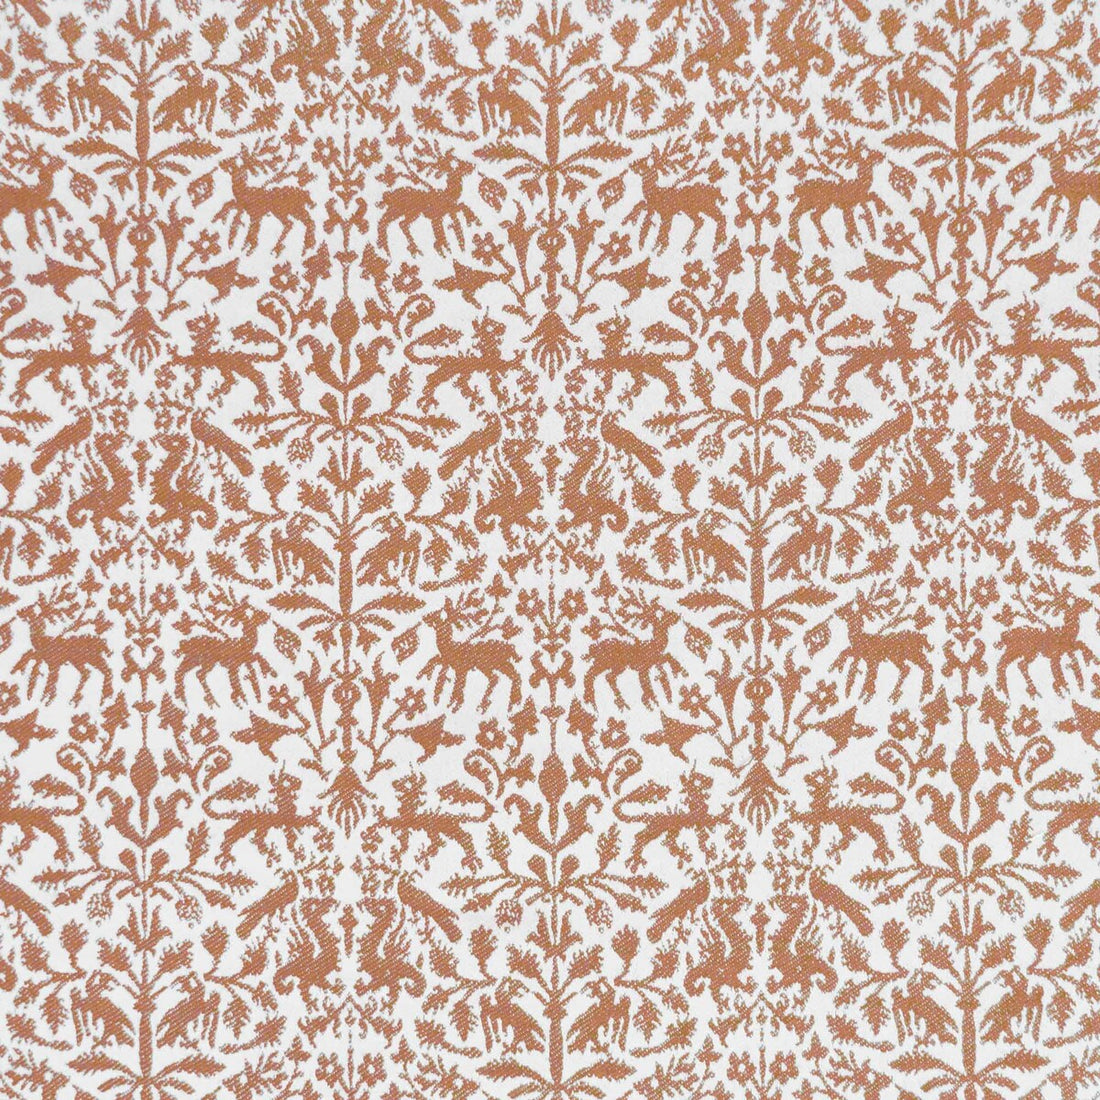 Augusta Emerita fabric in teja color - pattern LCT1112.006.0 - by Gaston y Daniela in the Lorenzo Castillo IX Hesperia collection